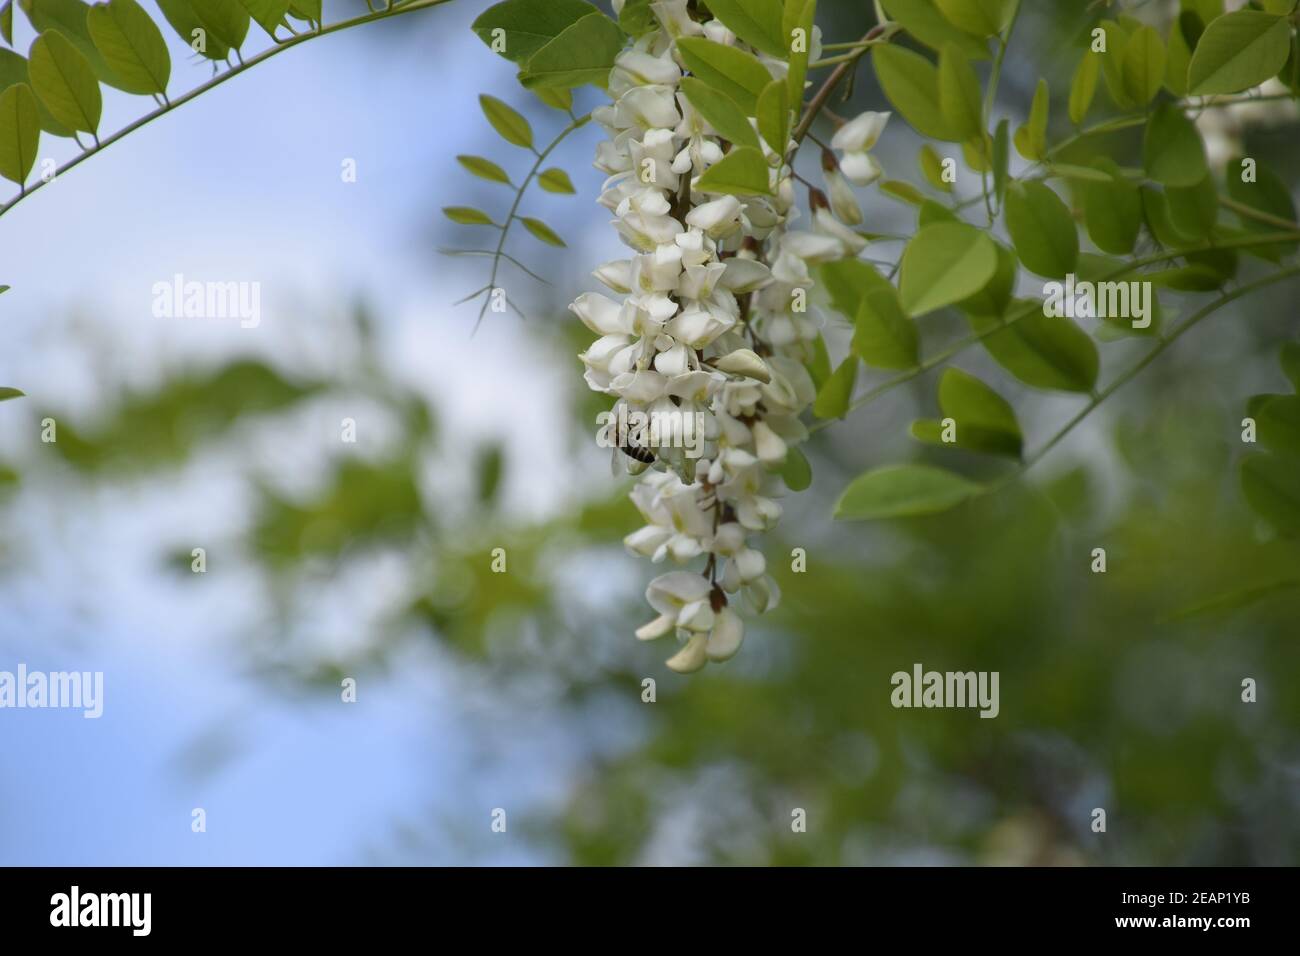 Flowering acacia white grapes Stock Photo